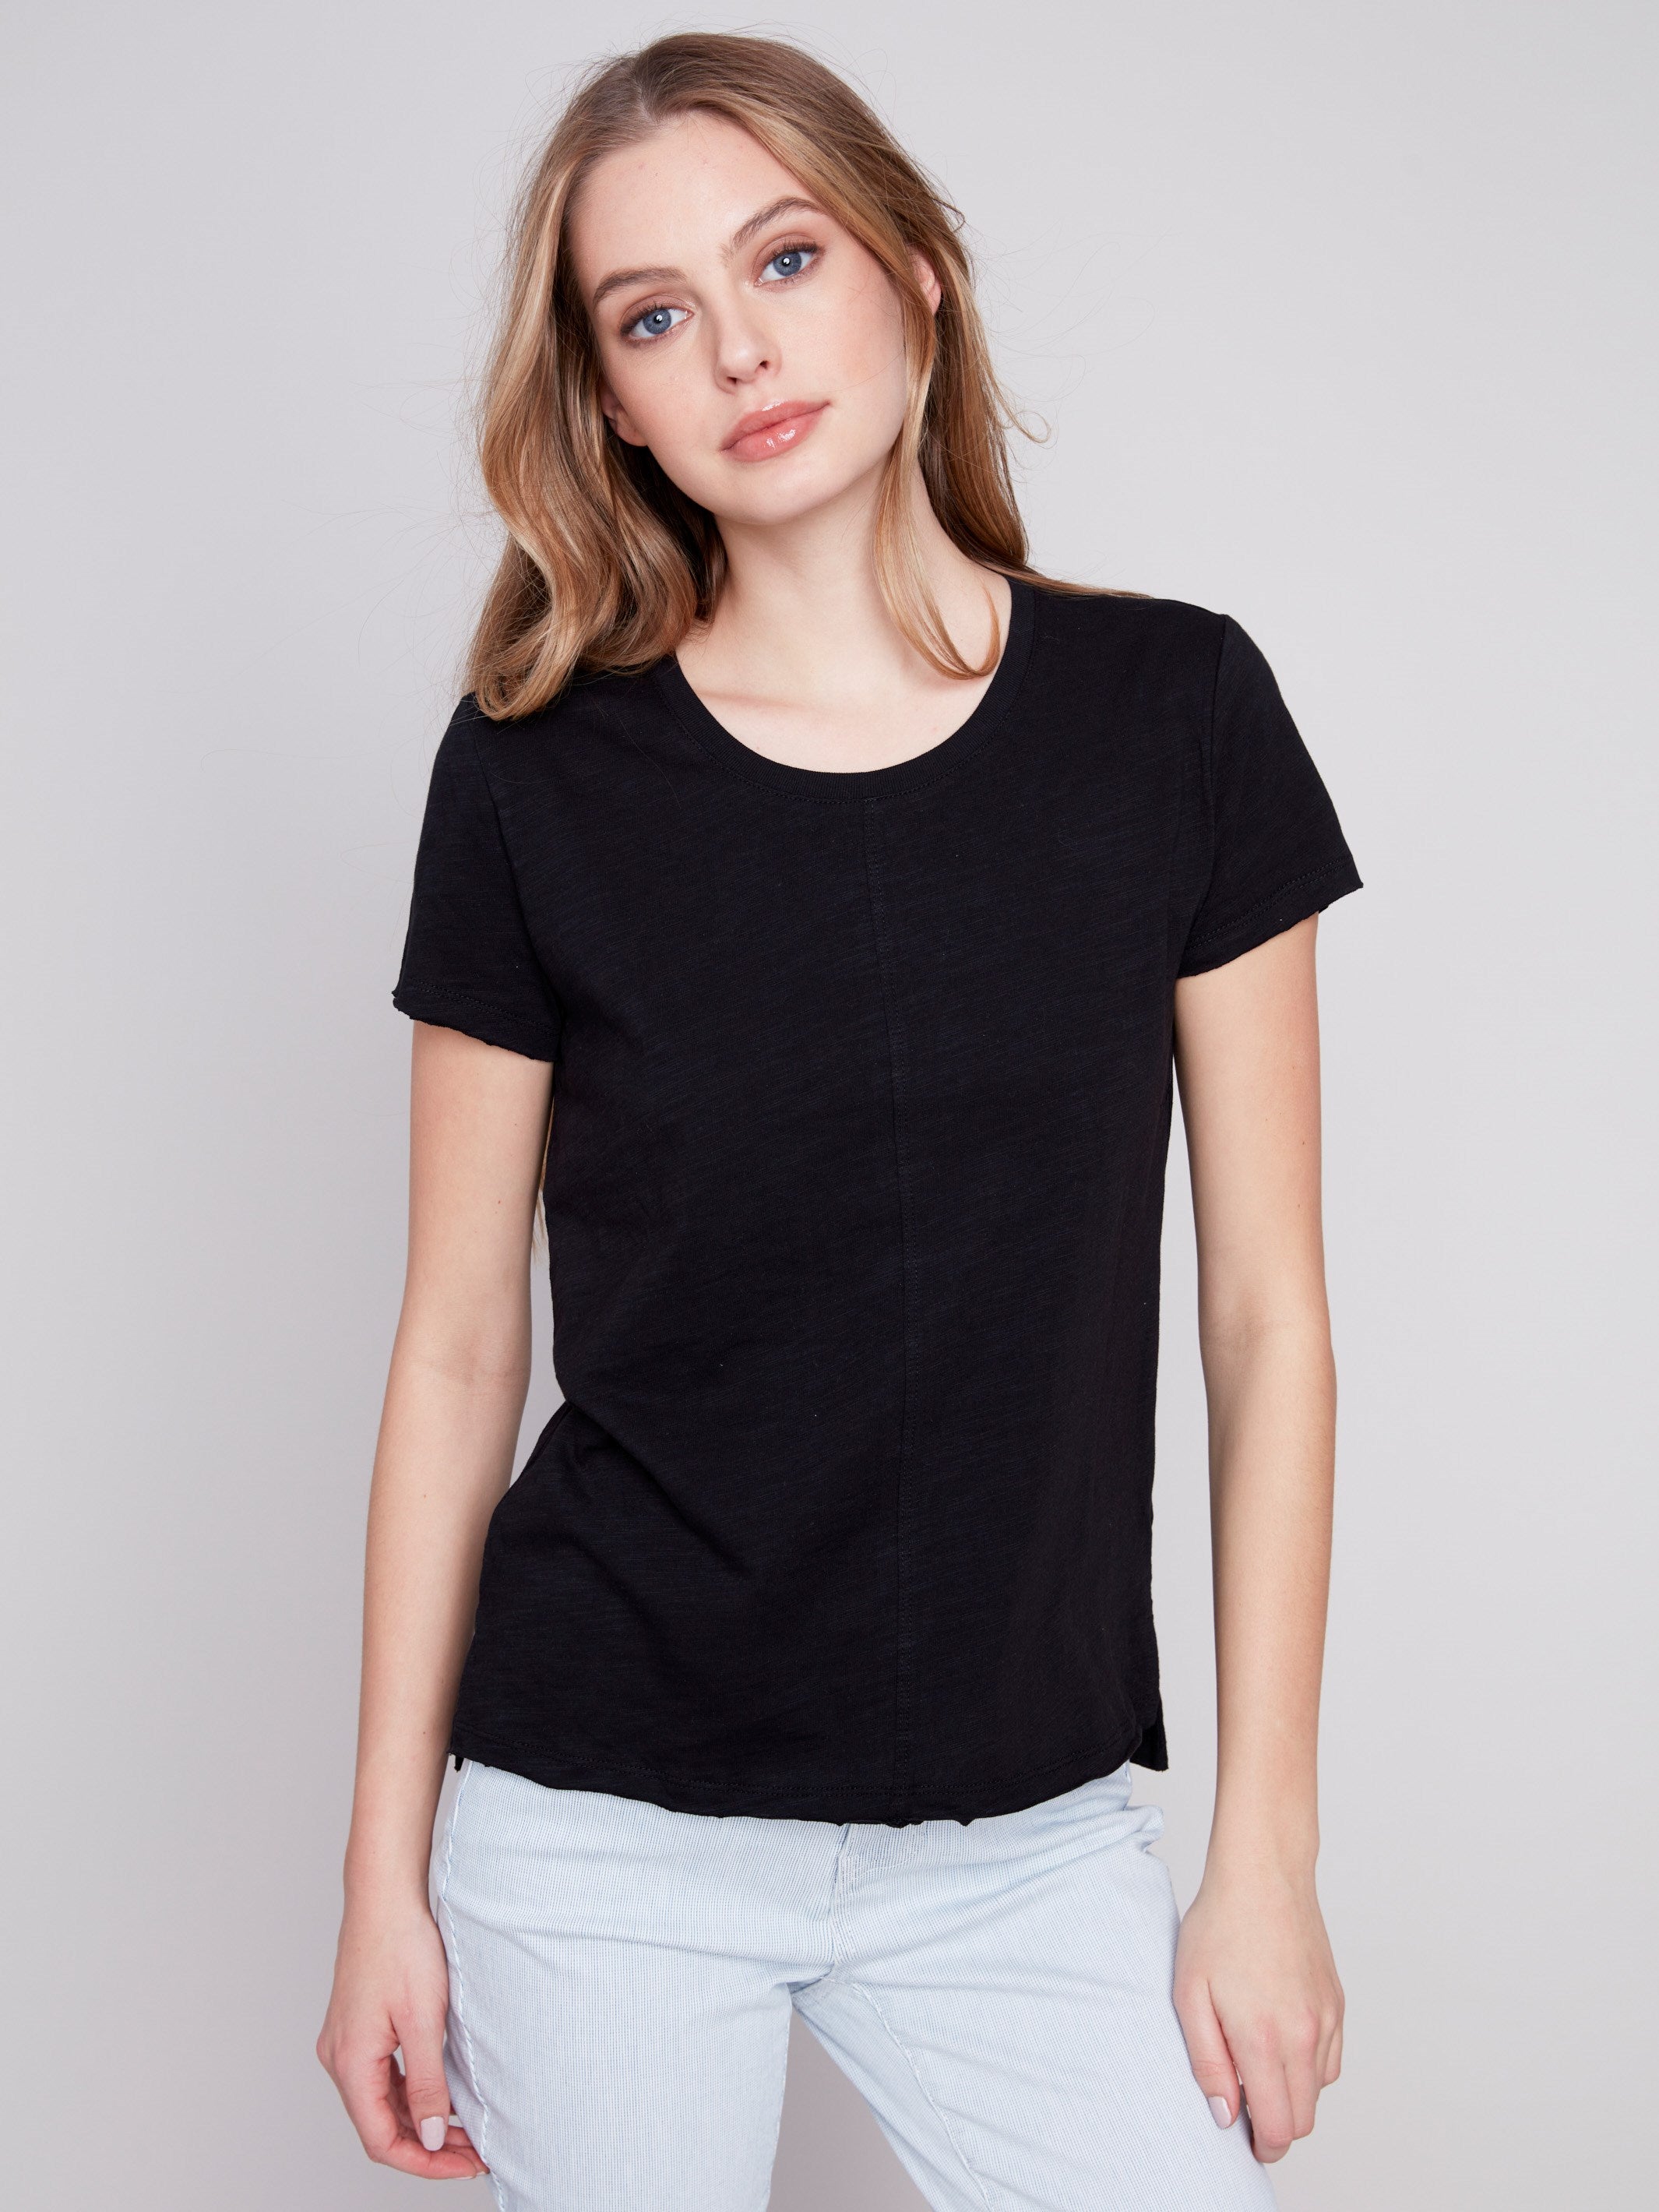 Charlie B Organic Cotton Slub Knit T-Shirt - Black - Image 4